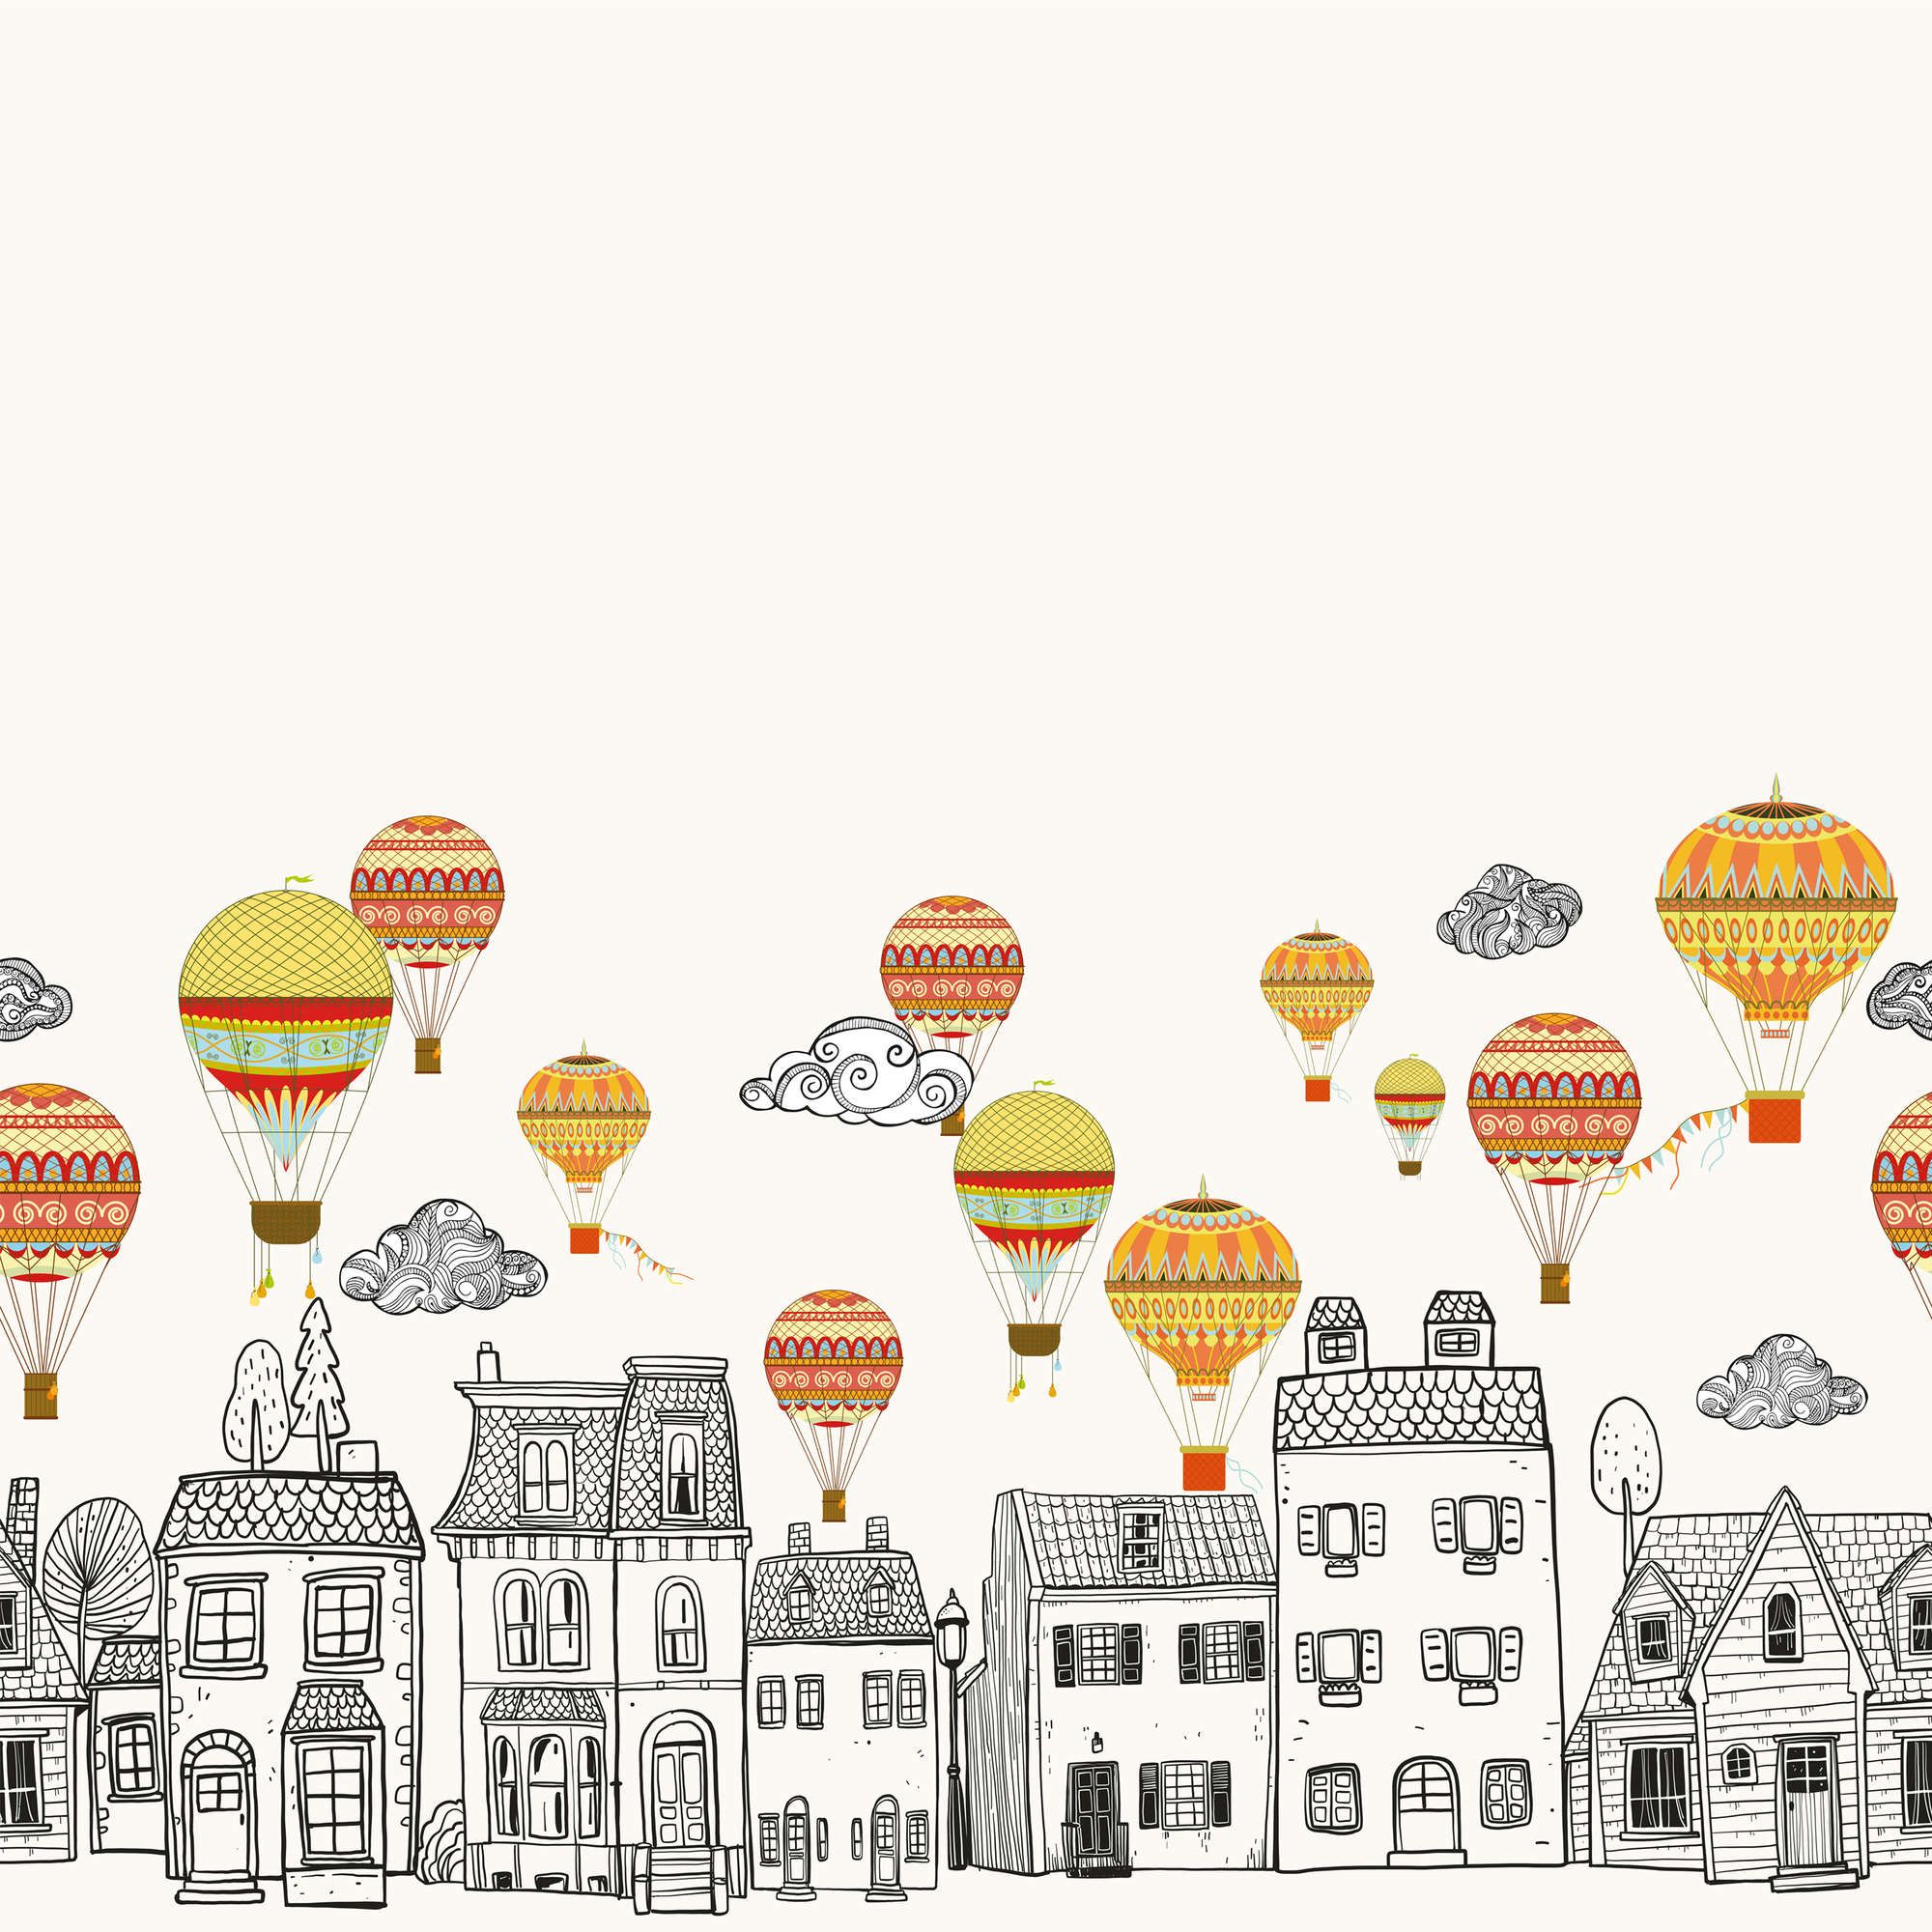             Fototapete Kleinstadt mit Heißluftballoons – Glattes & leicht glänzendes Vlies
        